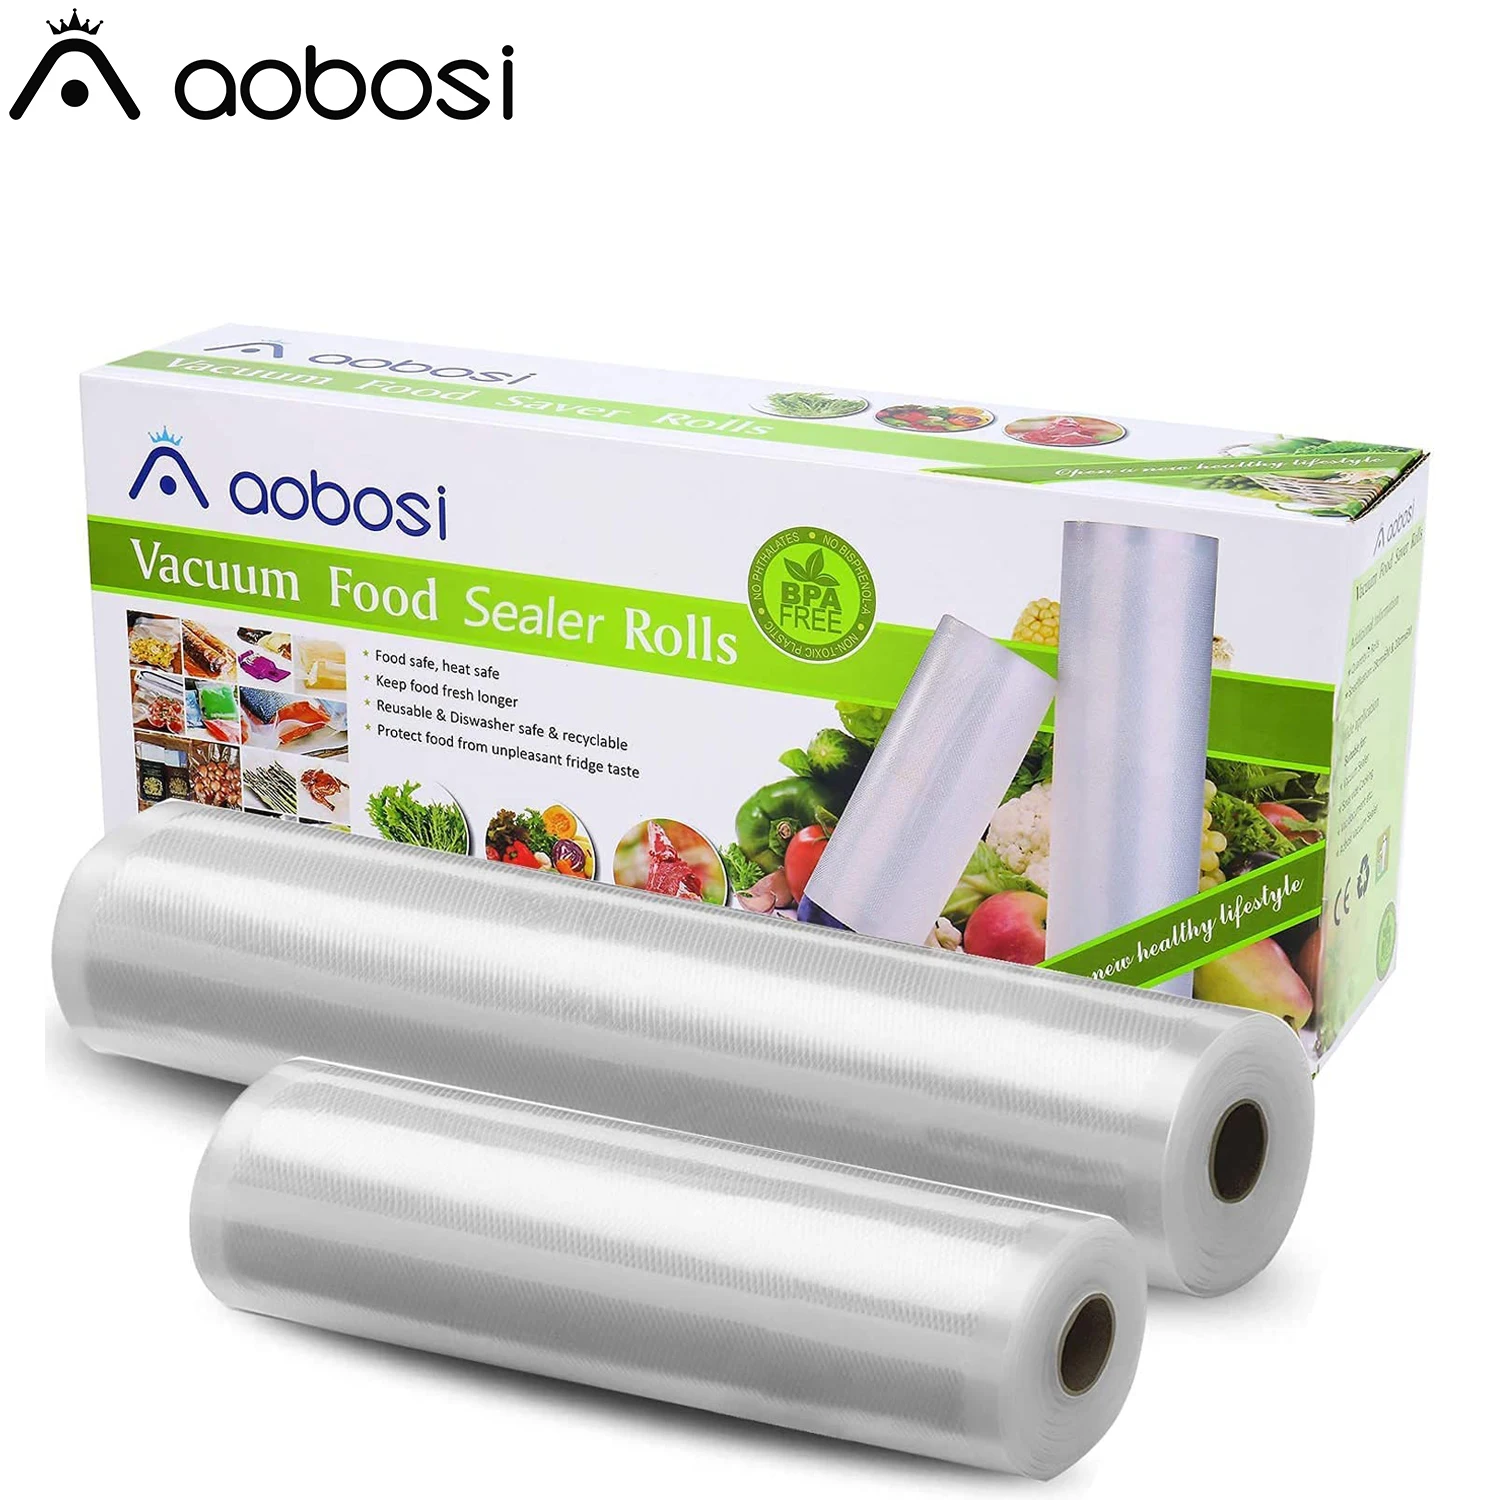 

Aobosi BPA Free Vacuum Sealer Bags Vacuum Food Sealer Rolls LFGB Approved Food Storage Bags 2 Pack Roll 28x600 cm & 20x600